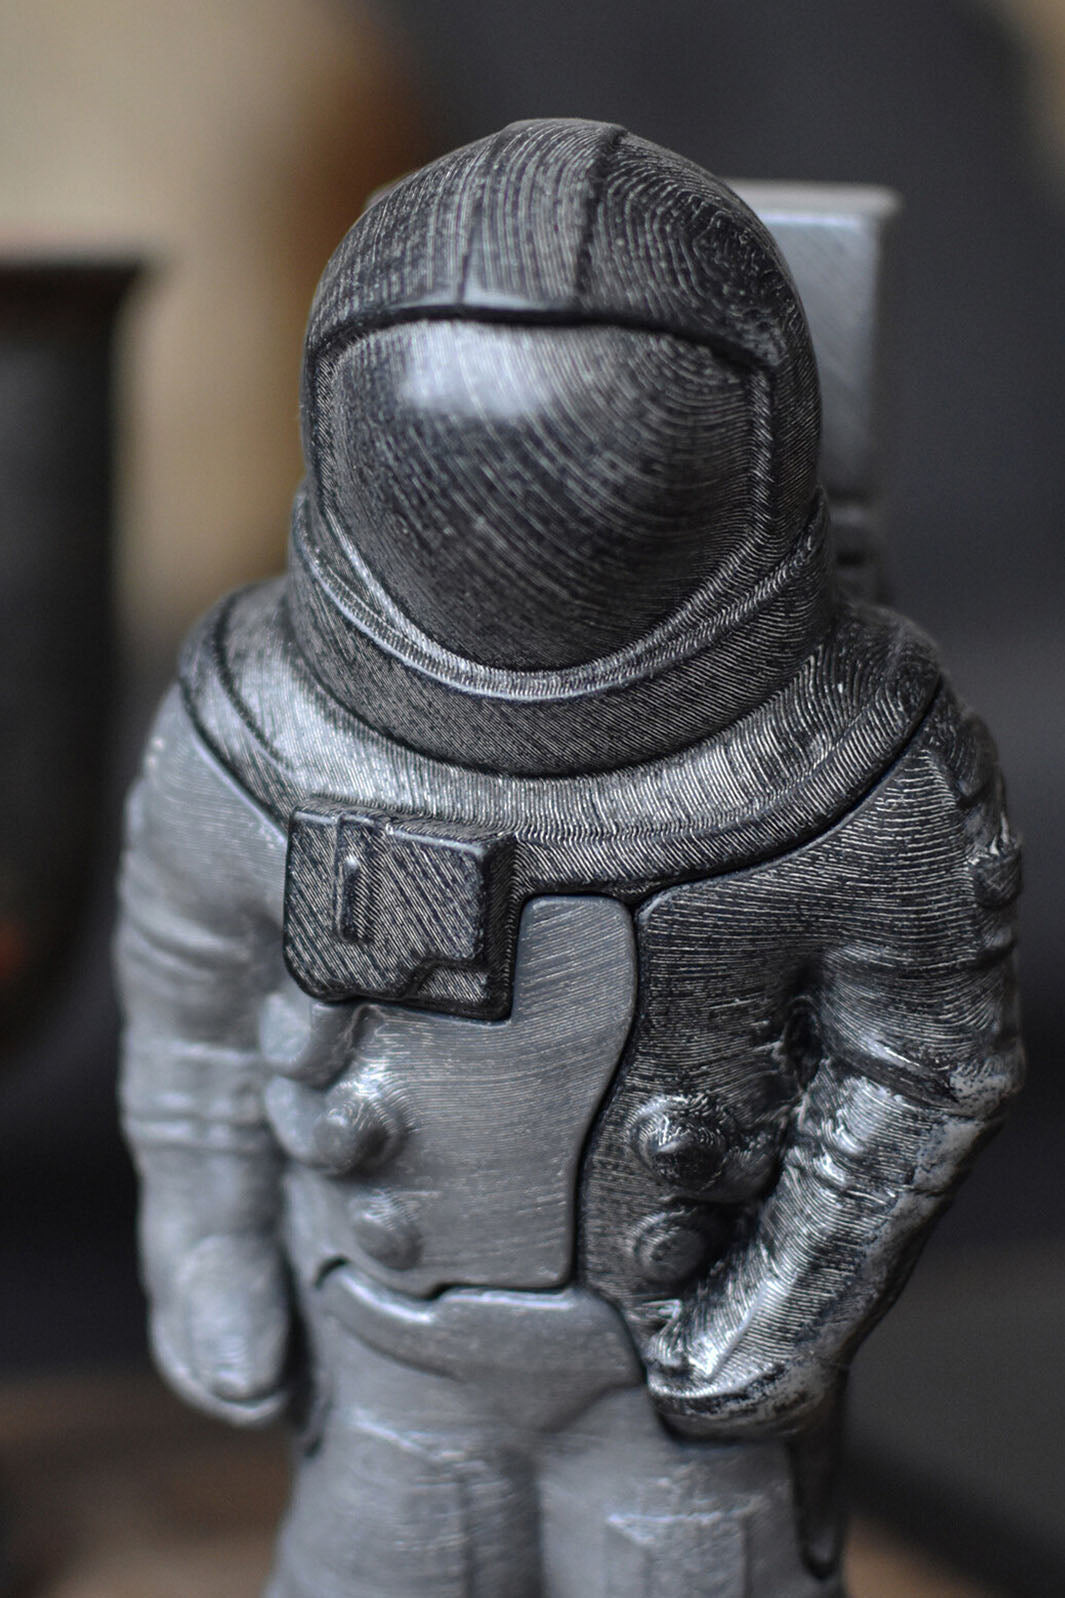 3D Art Object & Puzzle - Astronaut